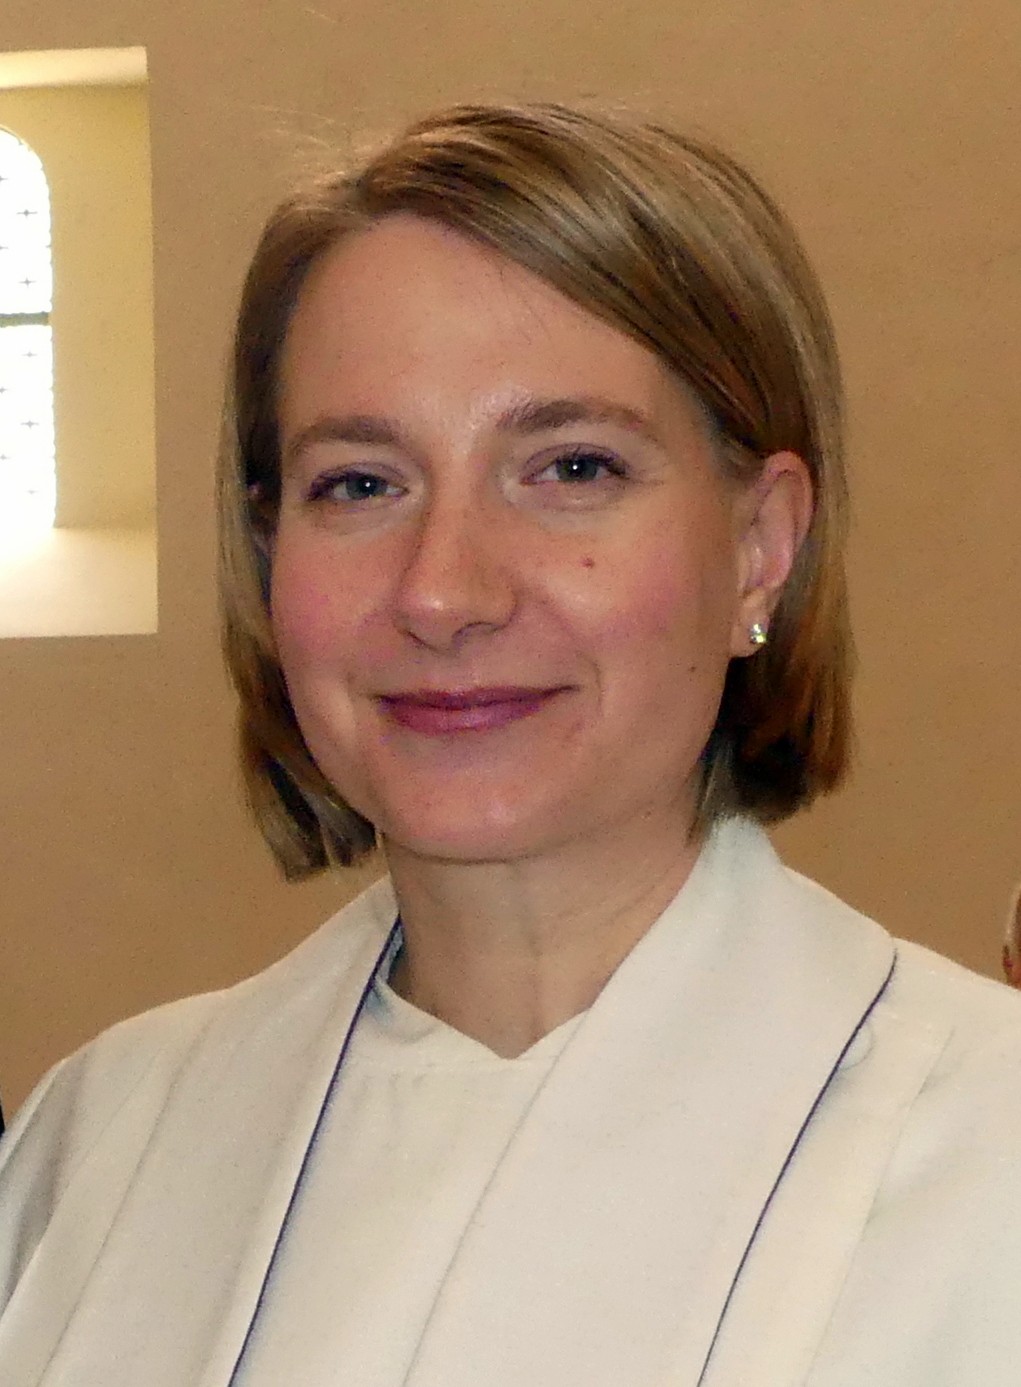 Pfarrerin Annegret Steinke